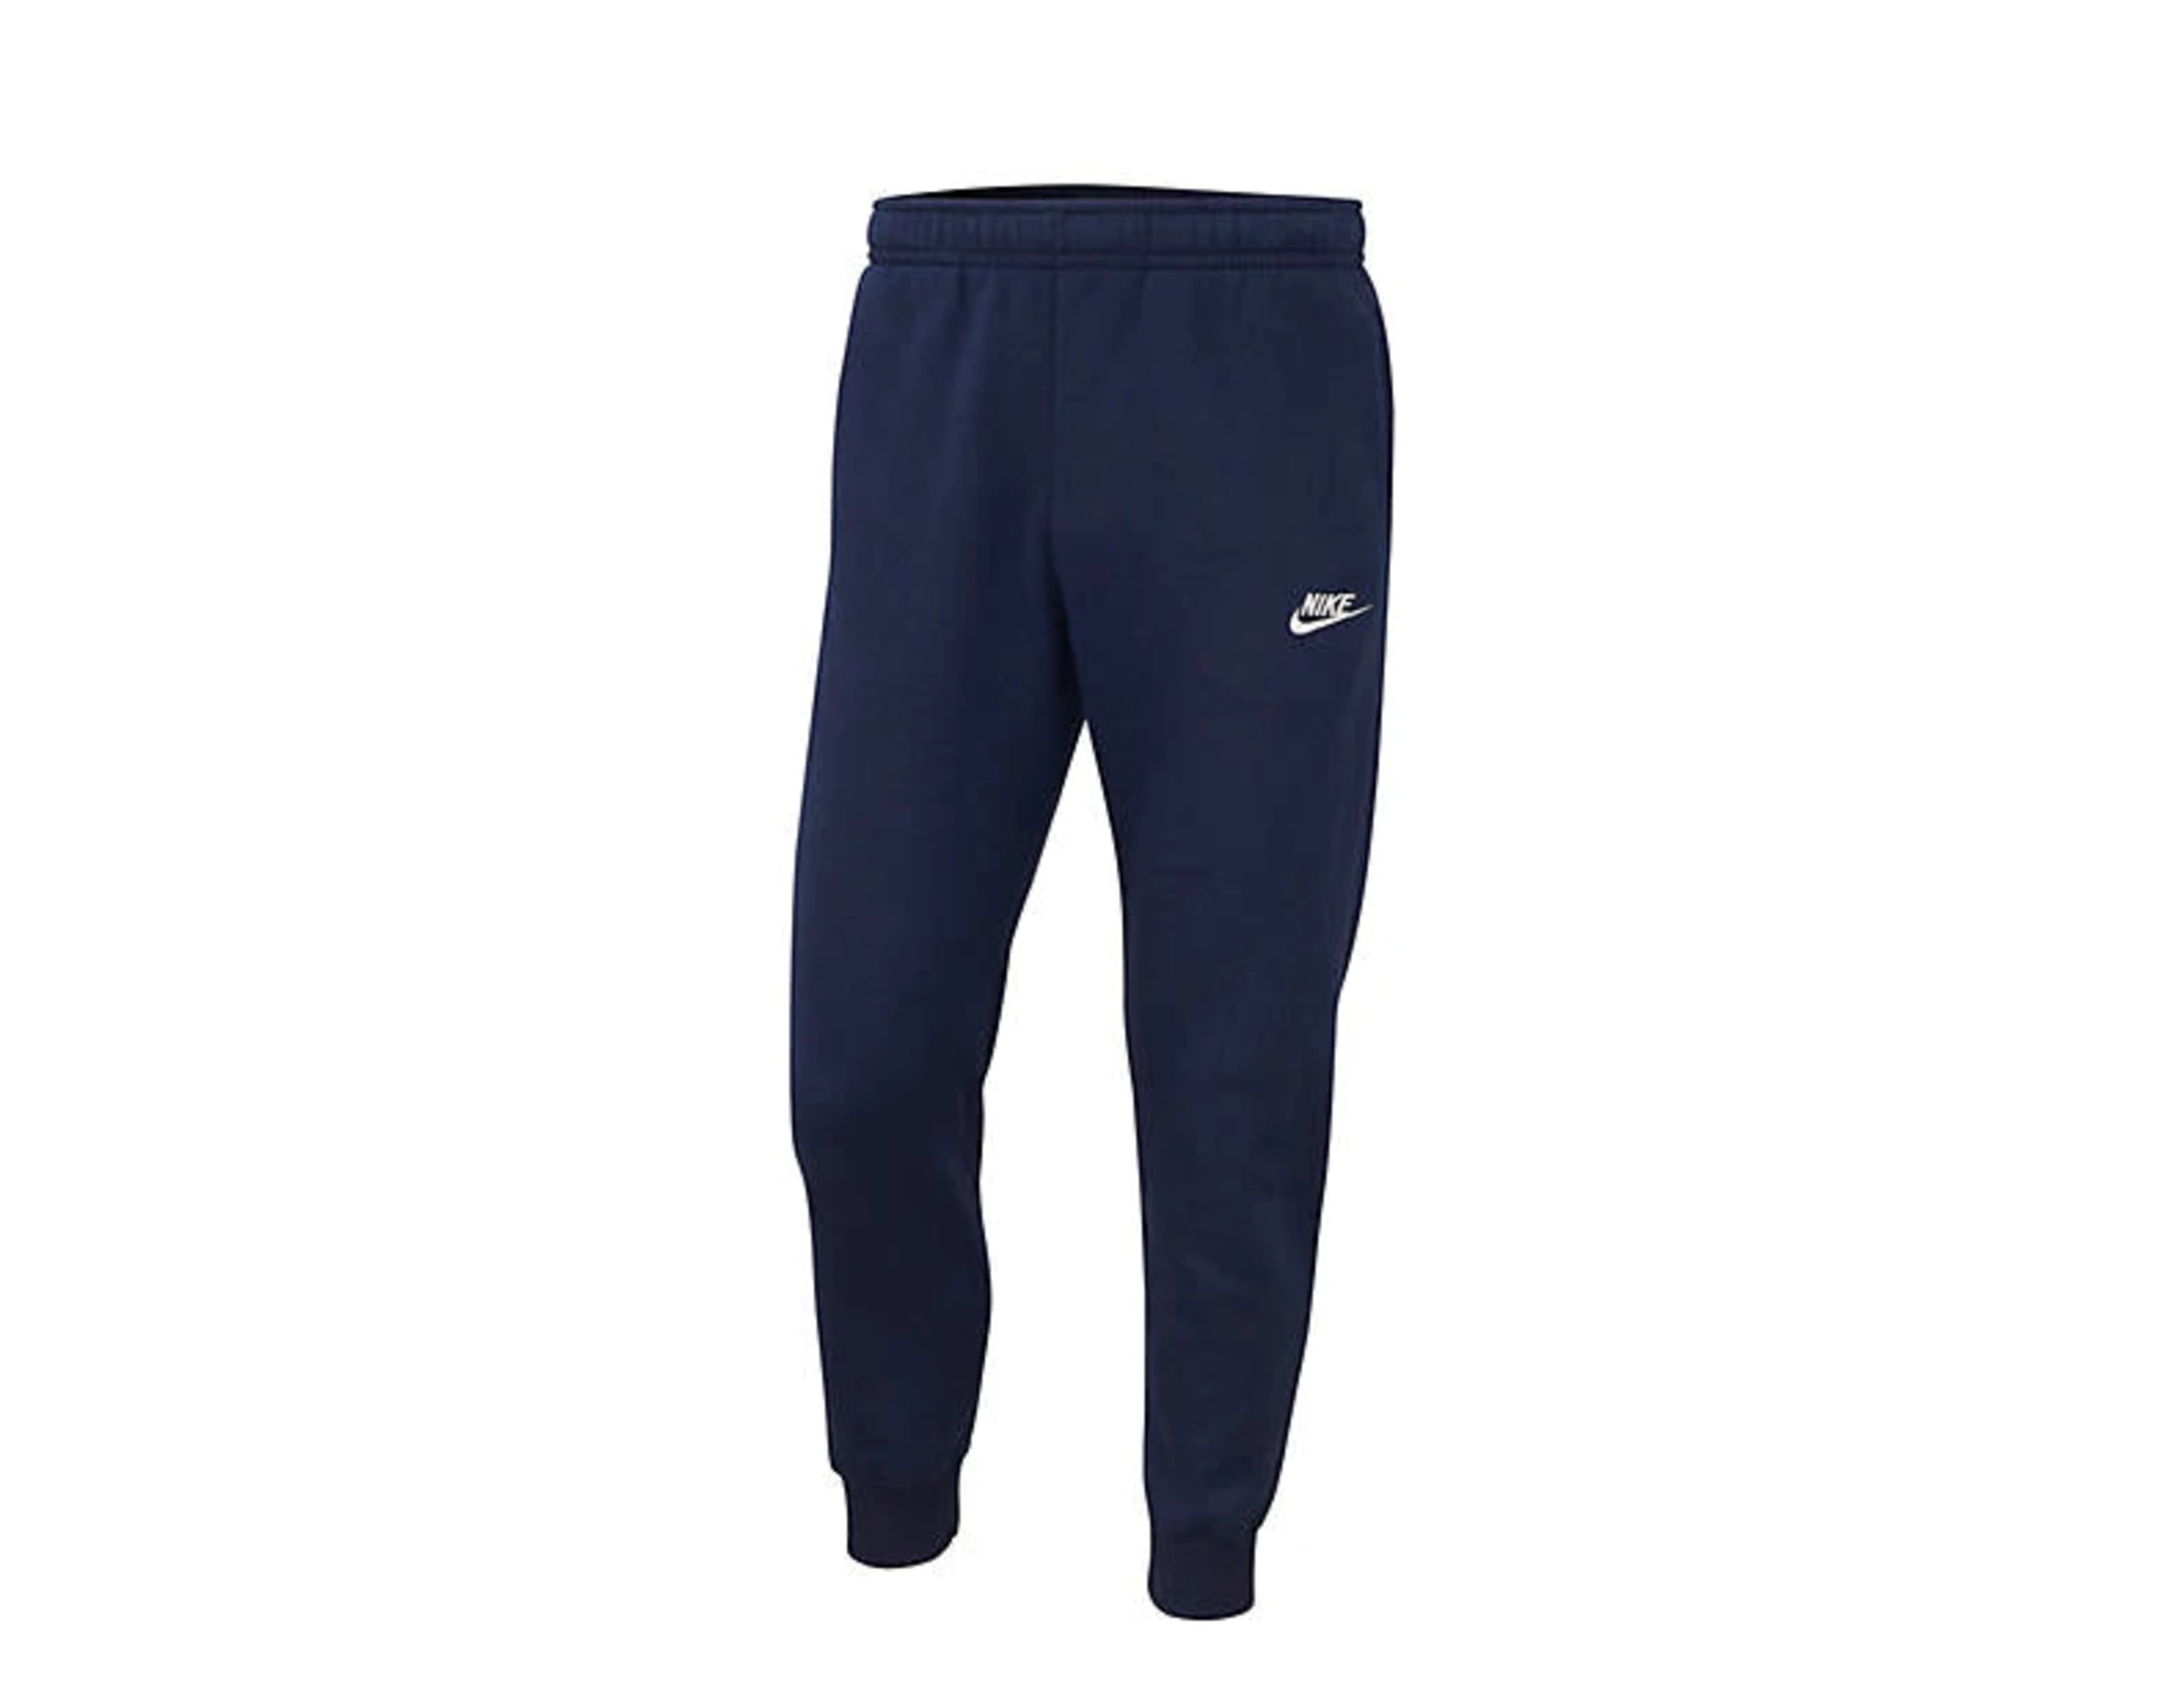 Nike Sportswear Club Fleece Joggers Navy Blue 826431 410, Navy